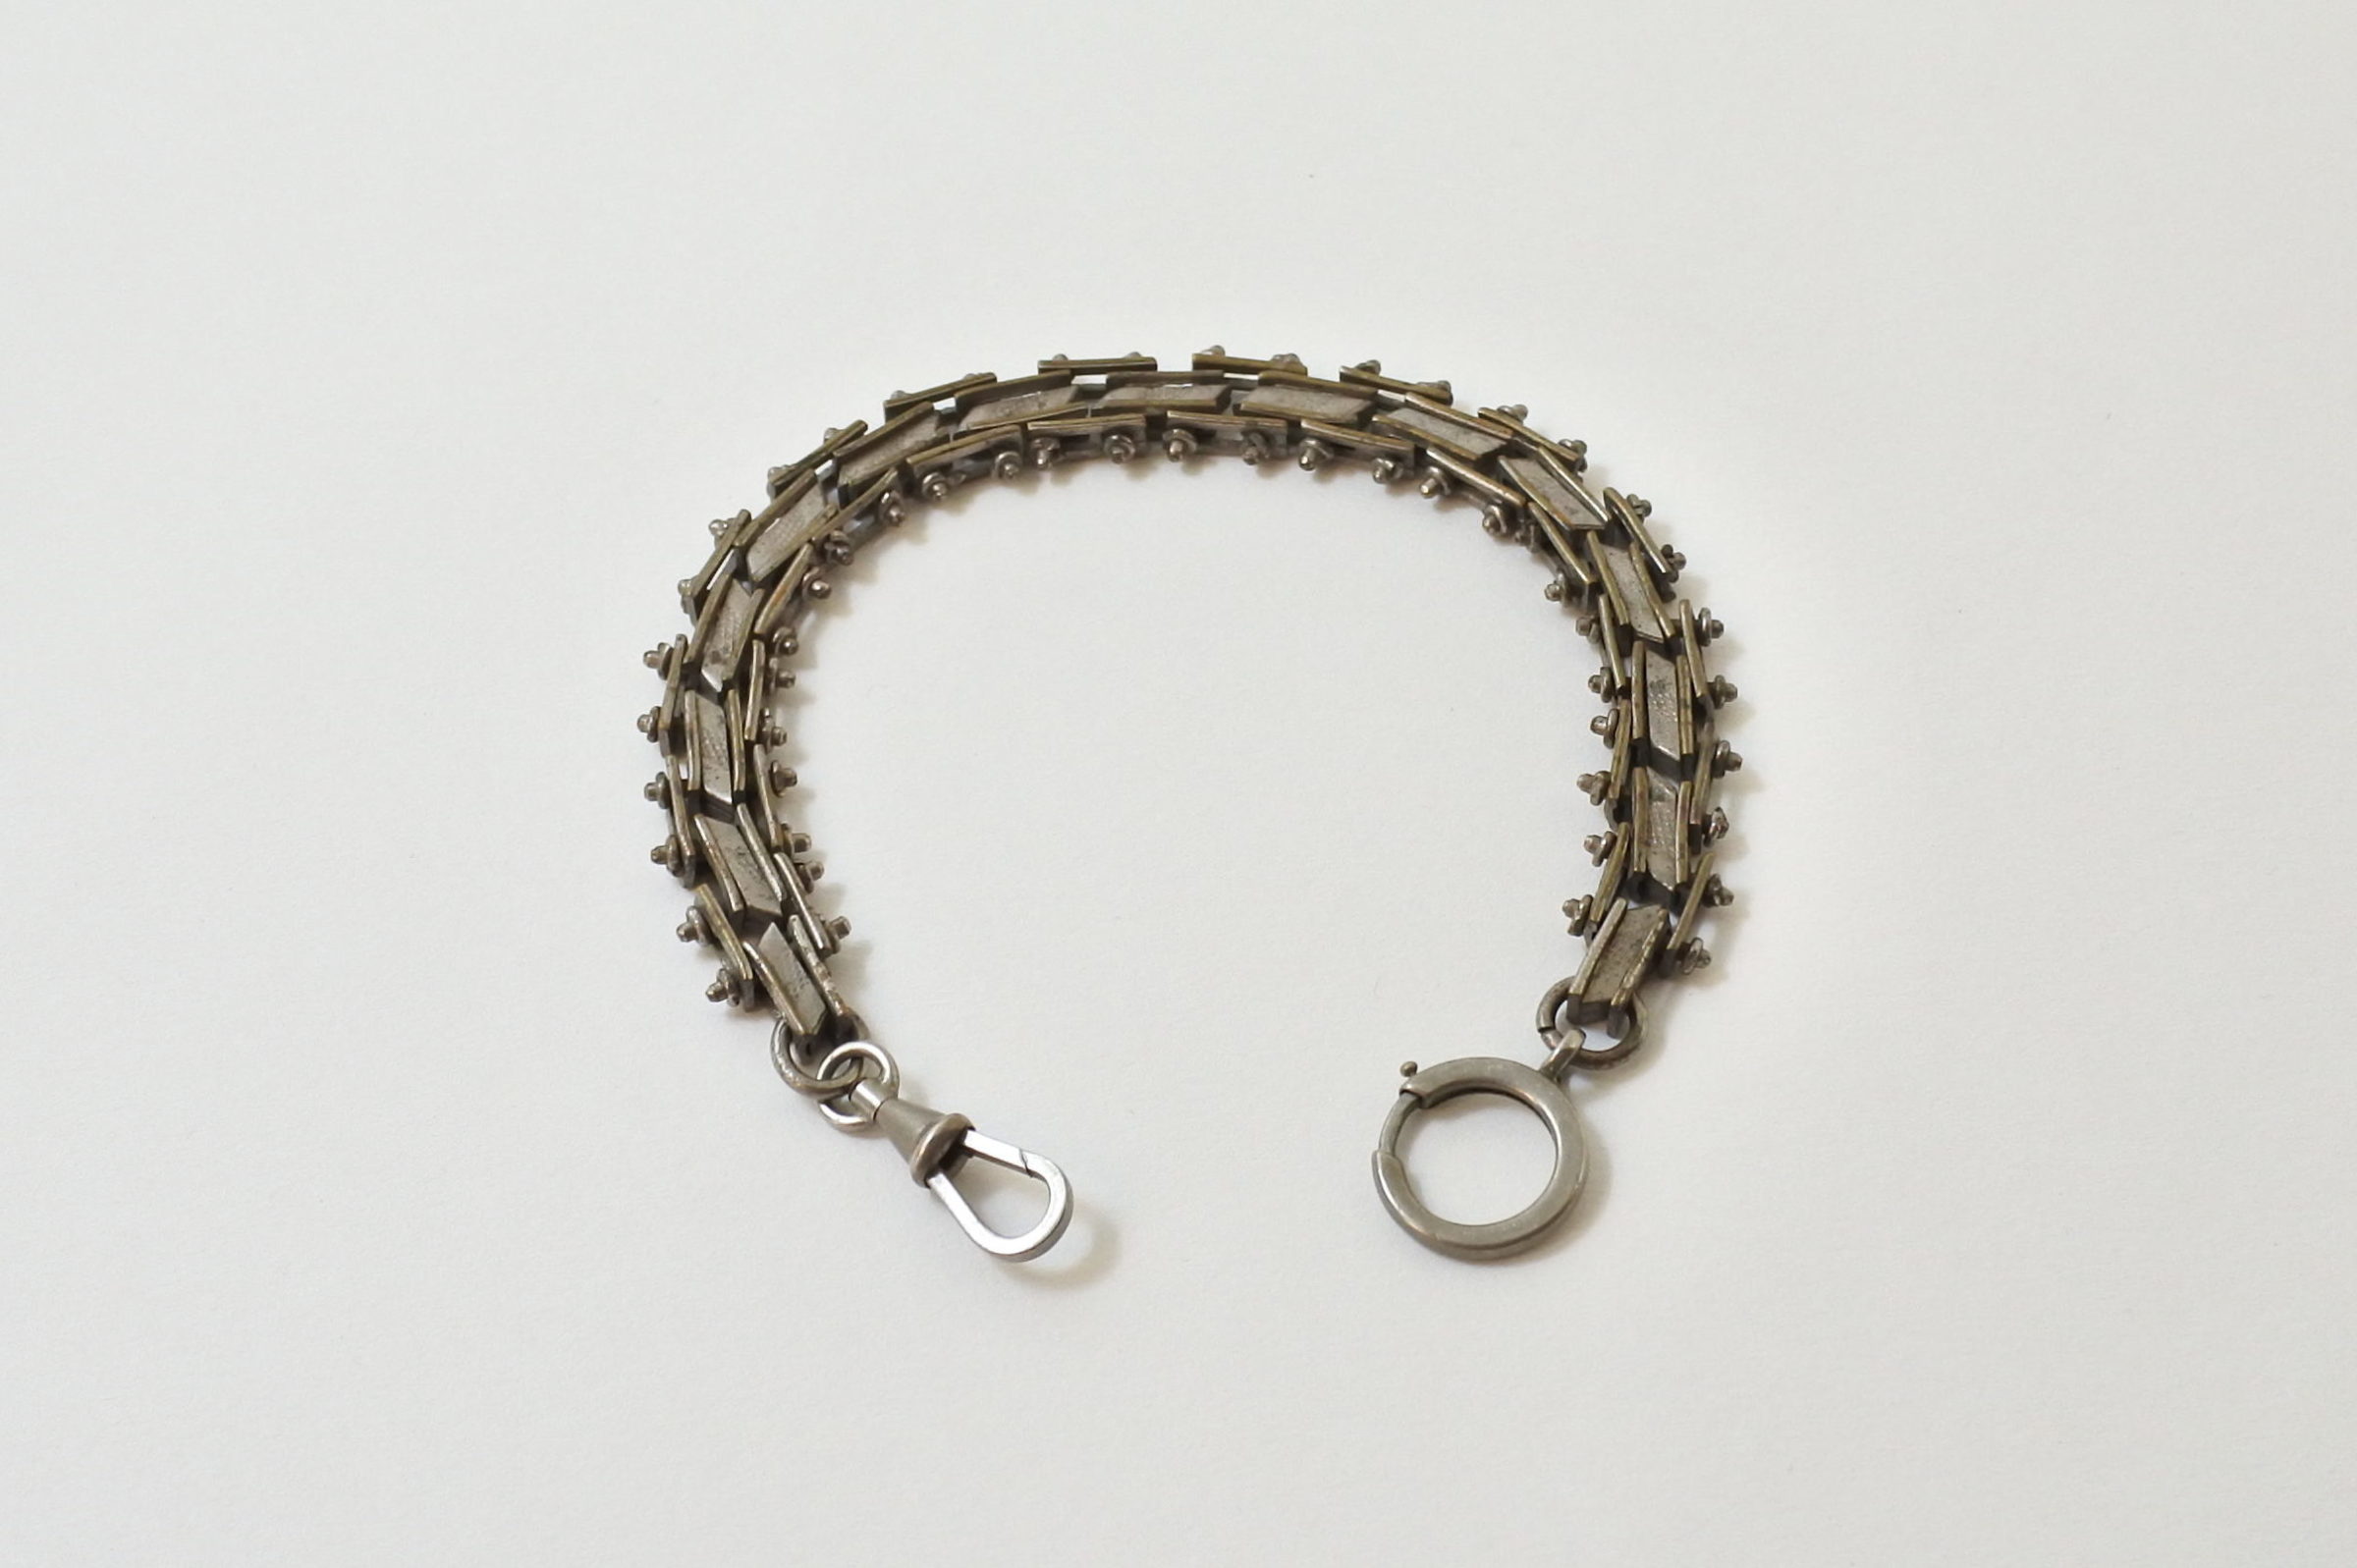 Antica catena in metallo argentato per orologio da tasca